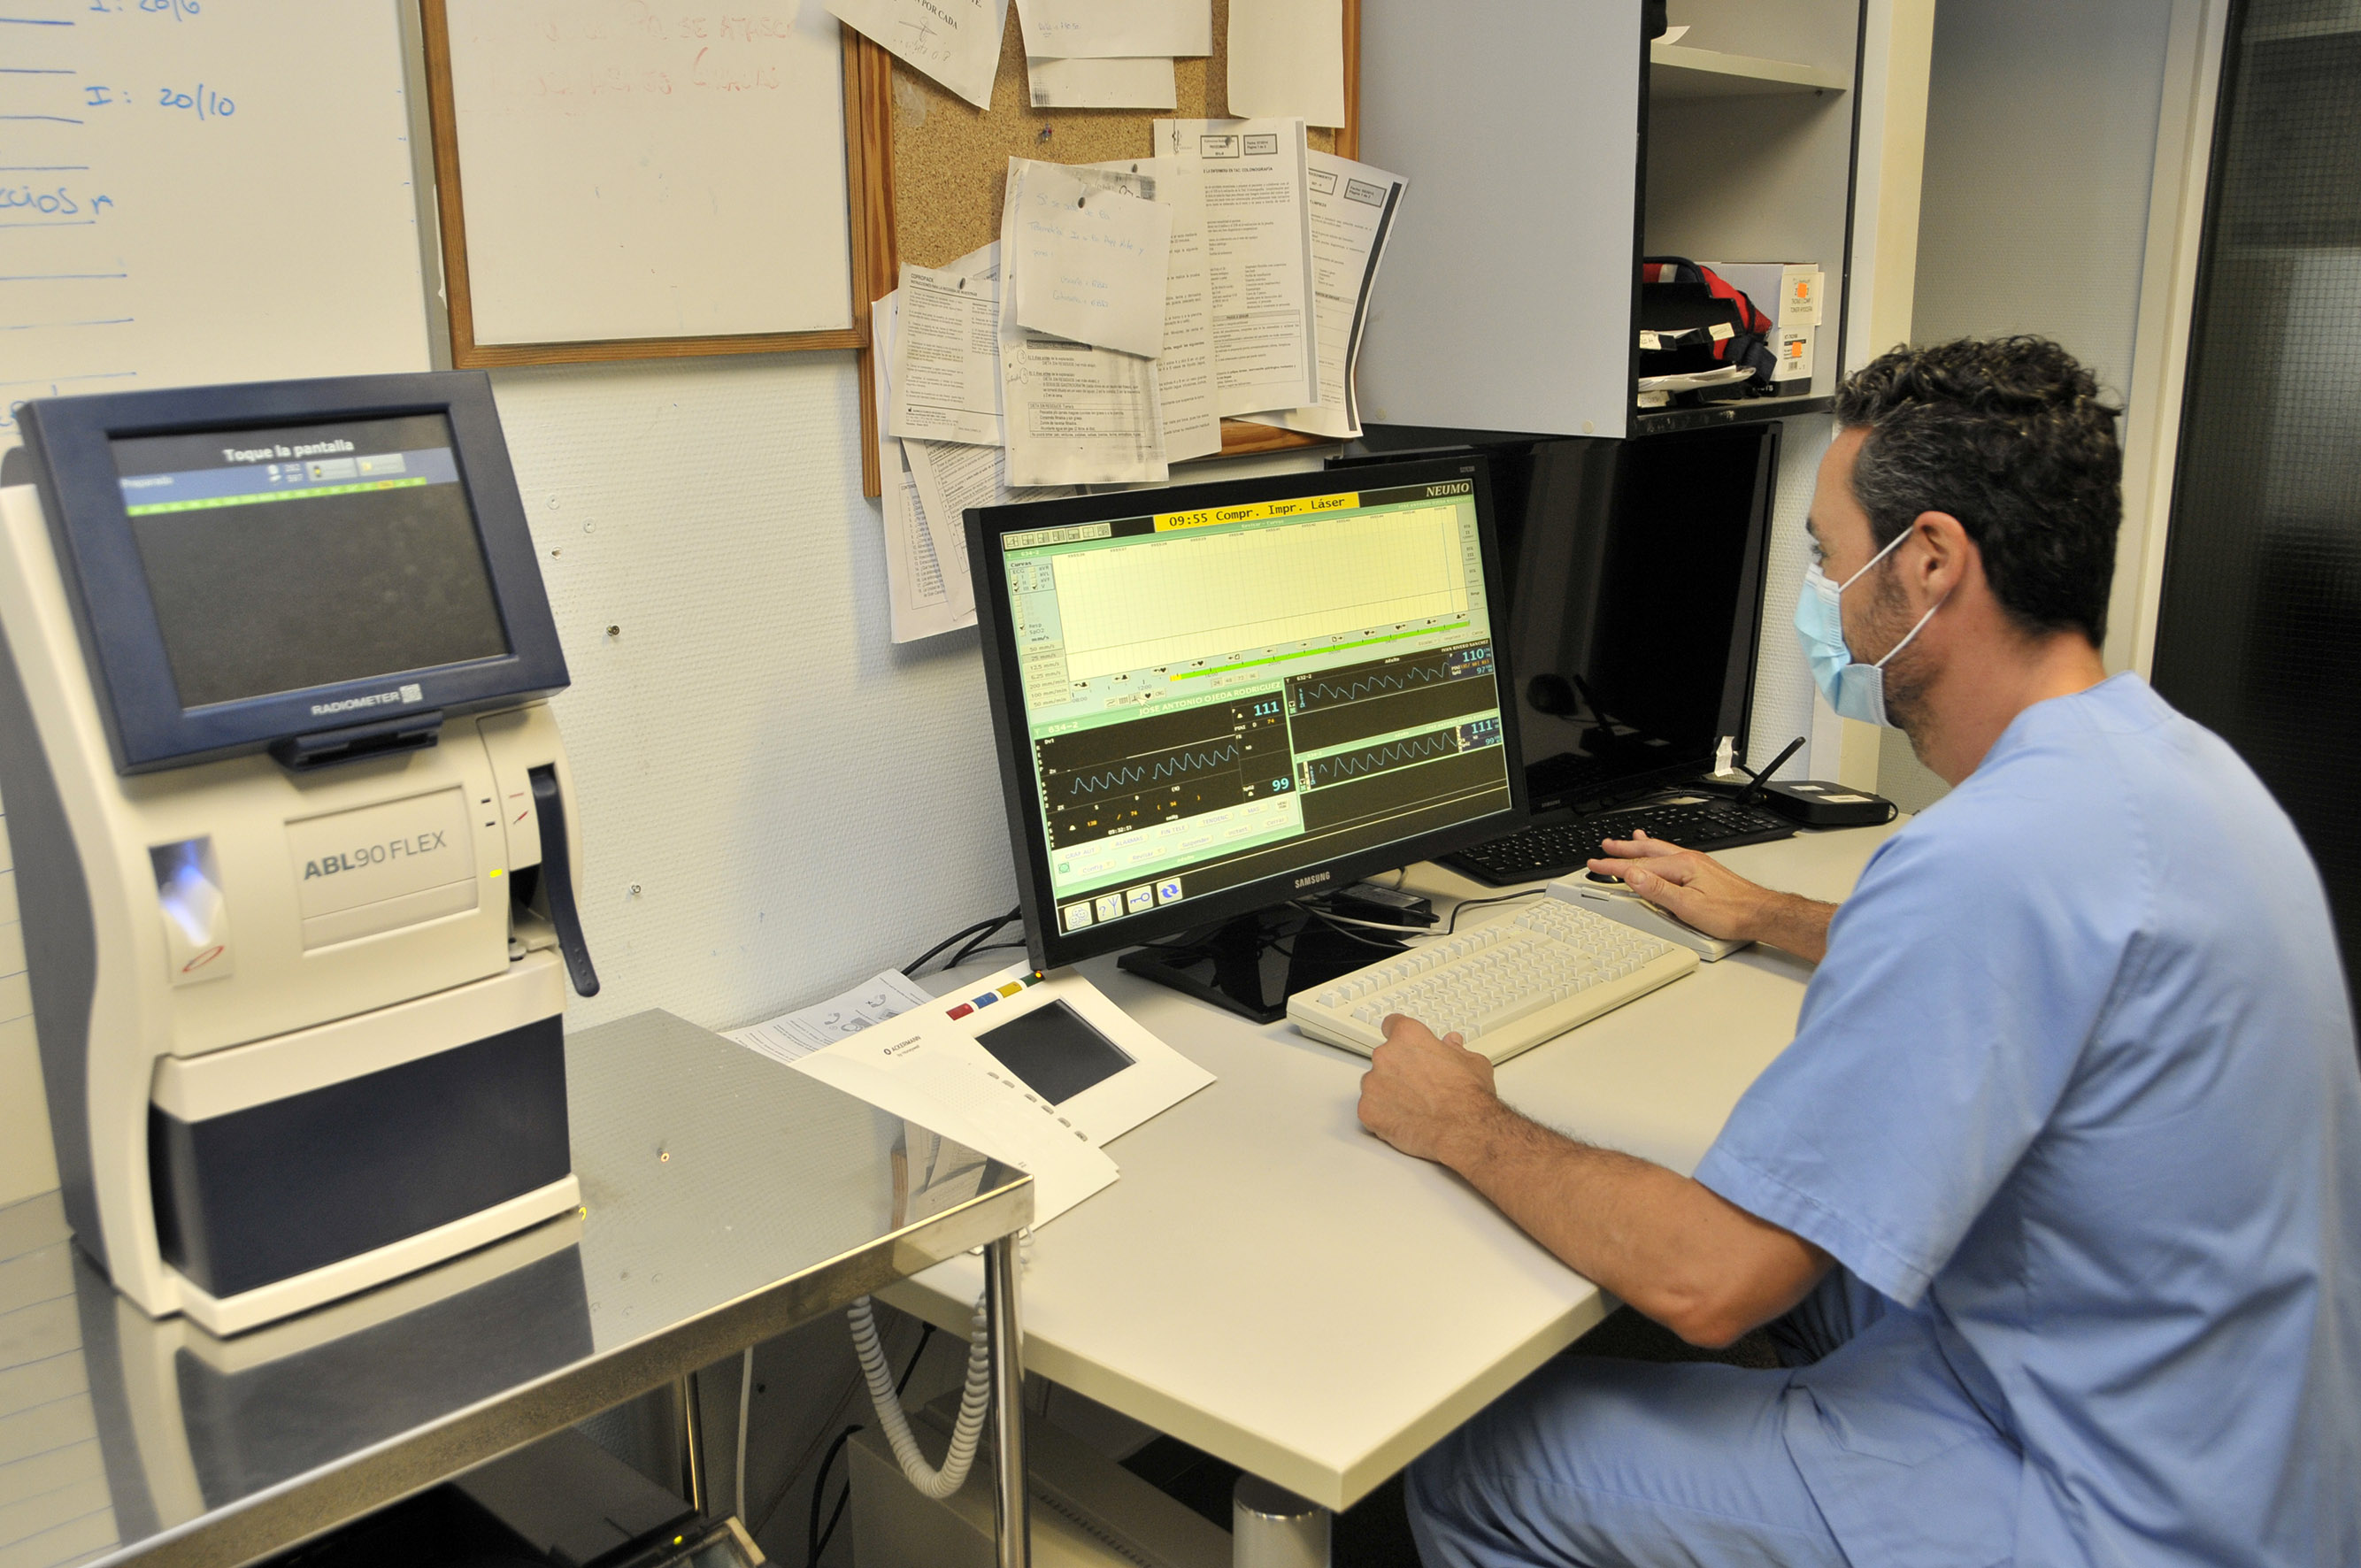 El Hospital Dr. Negrín amplía el sistema de telemetría al servicio de Medicina Interna